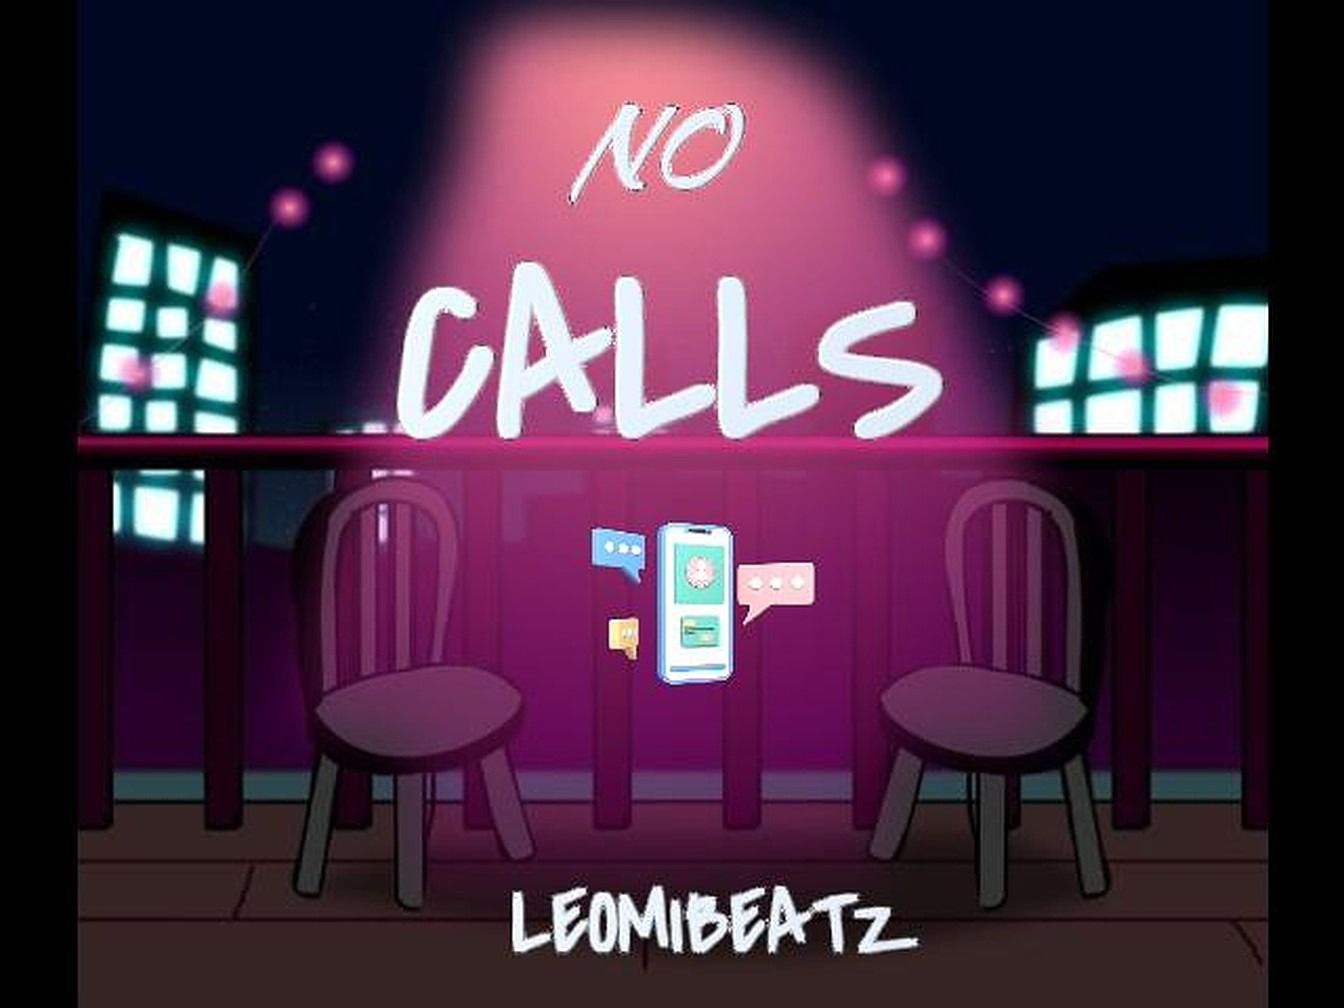 Leomibeatz - NO CALLS